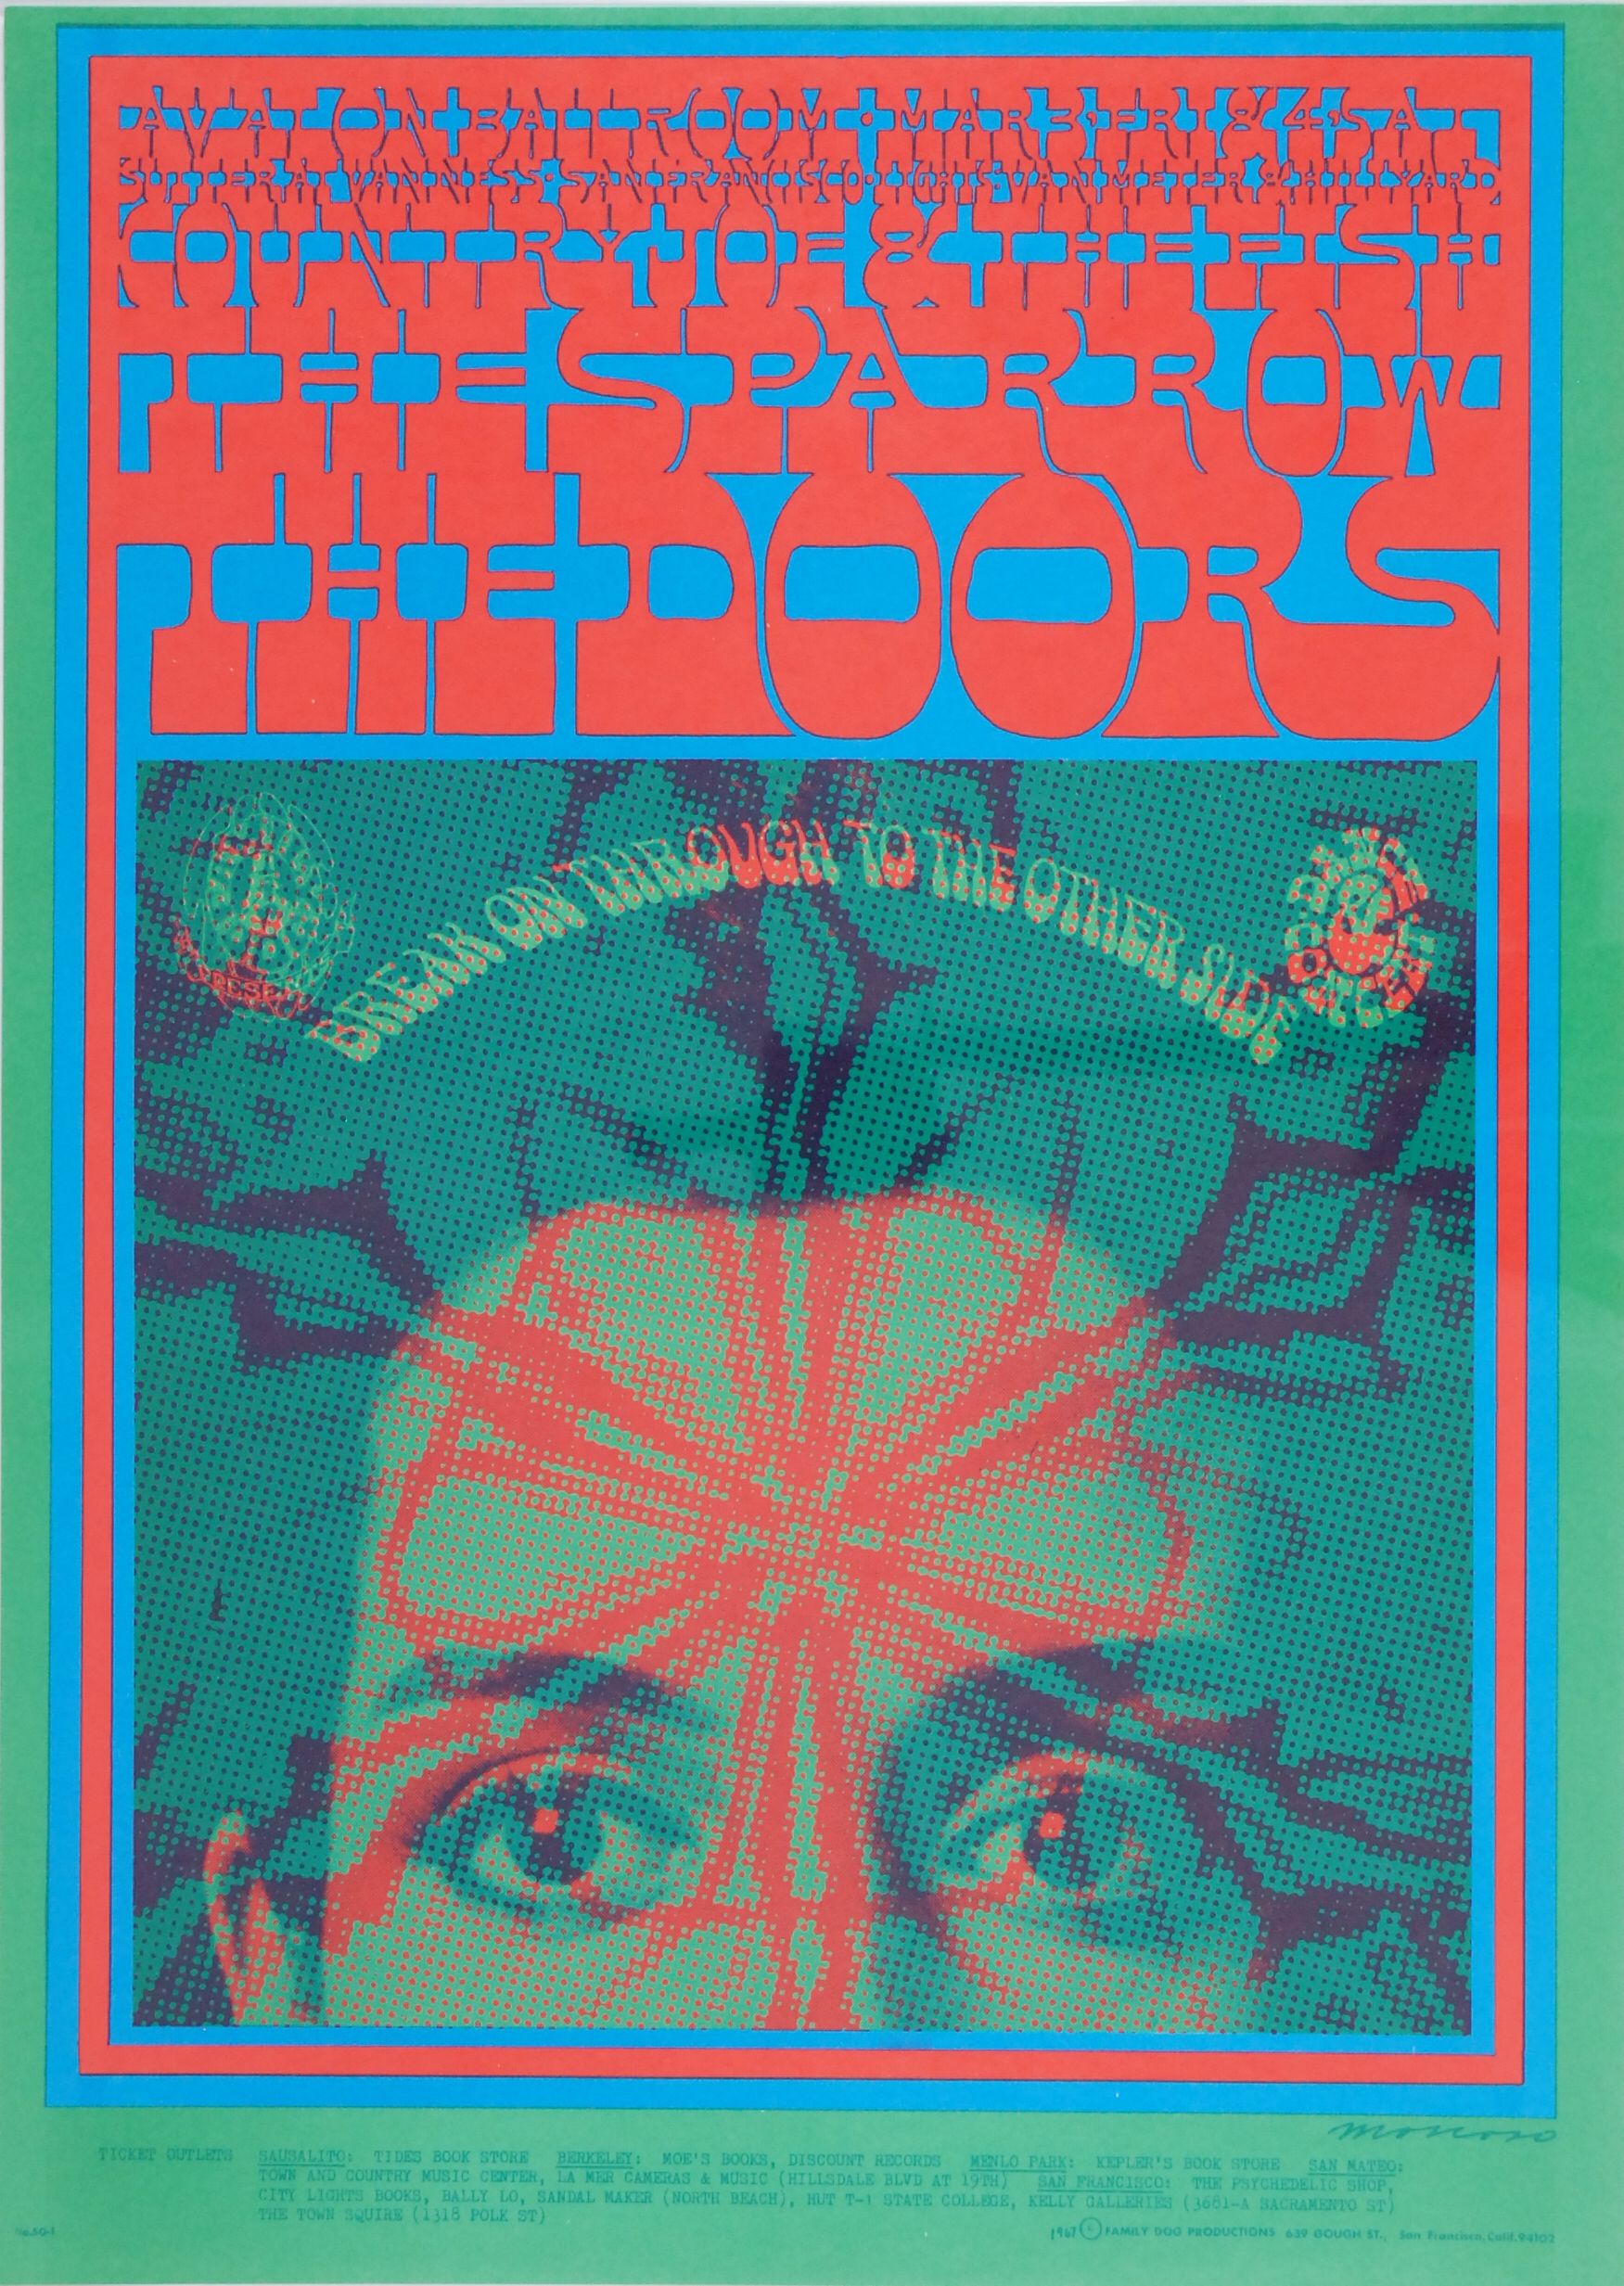 FD-50-OP-1 Concert Poster